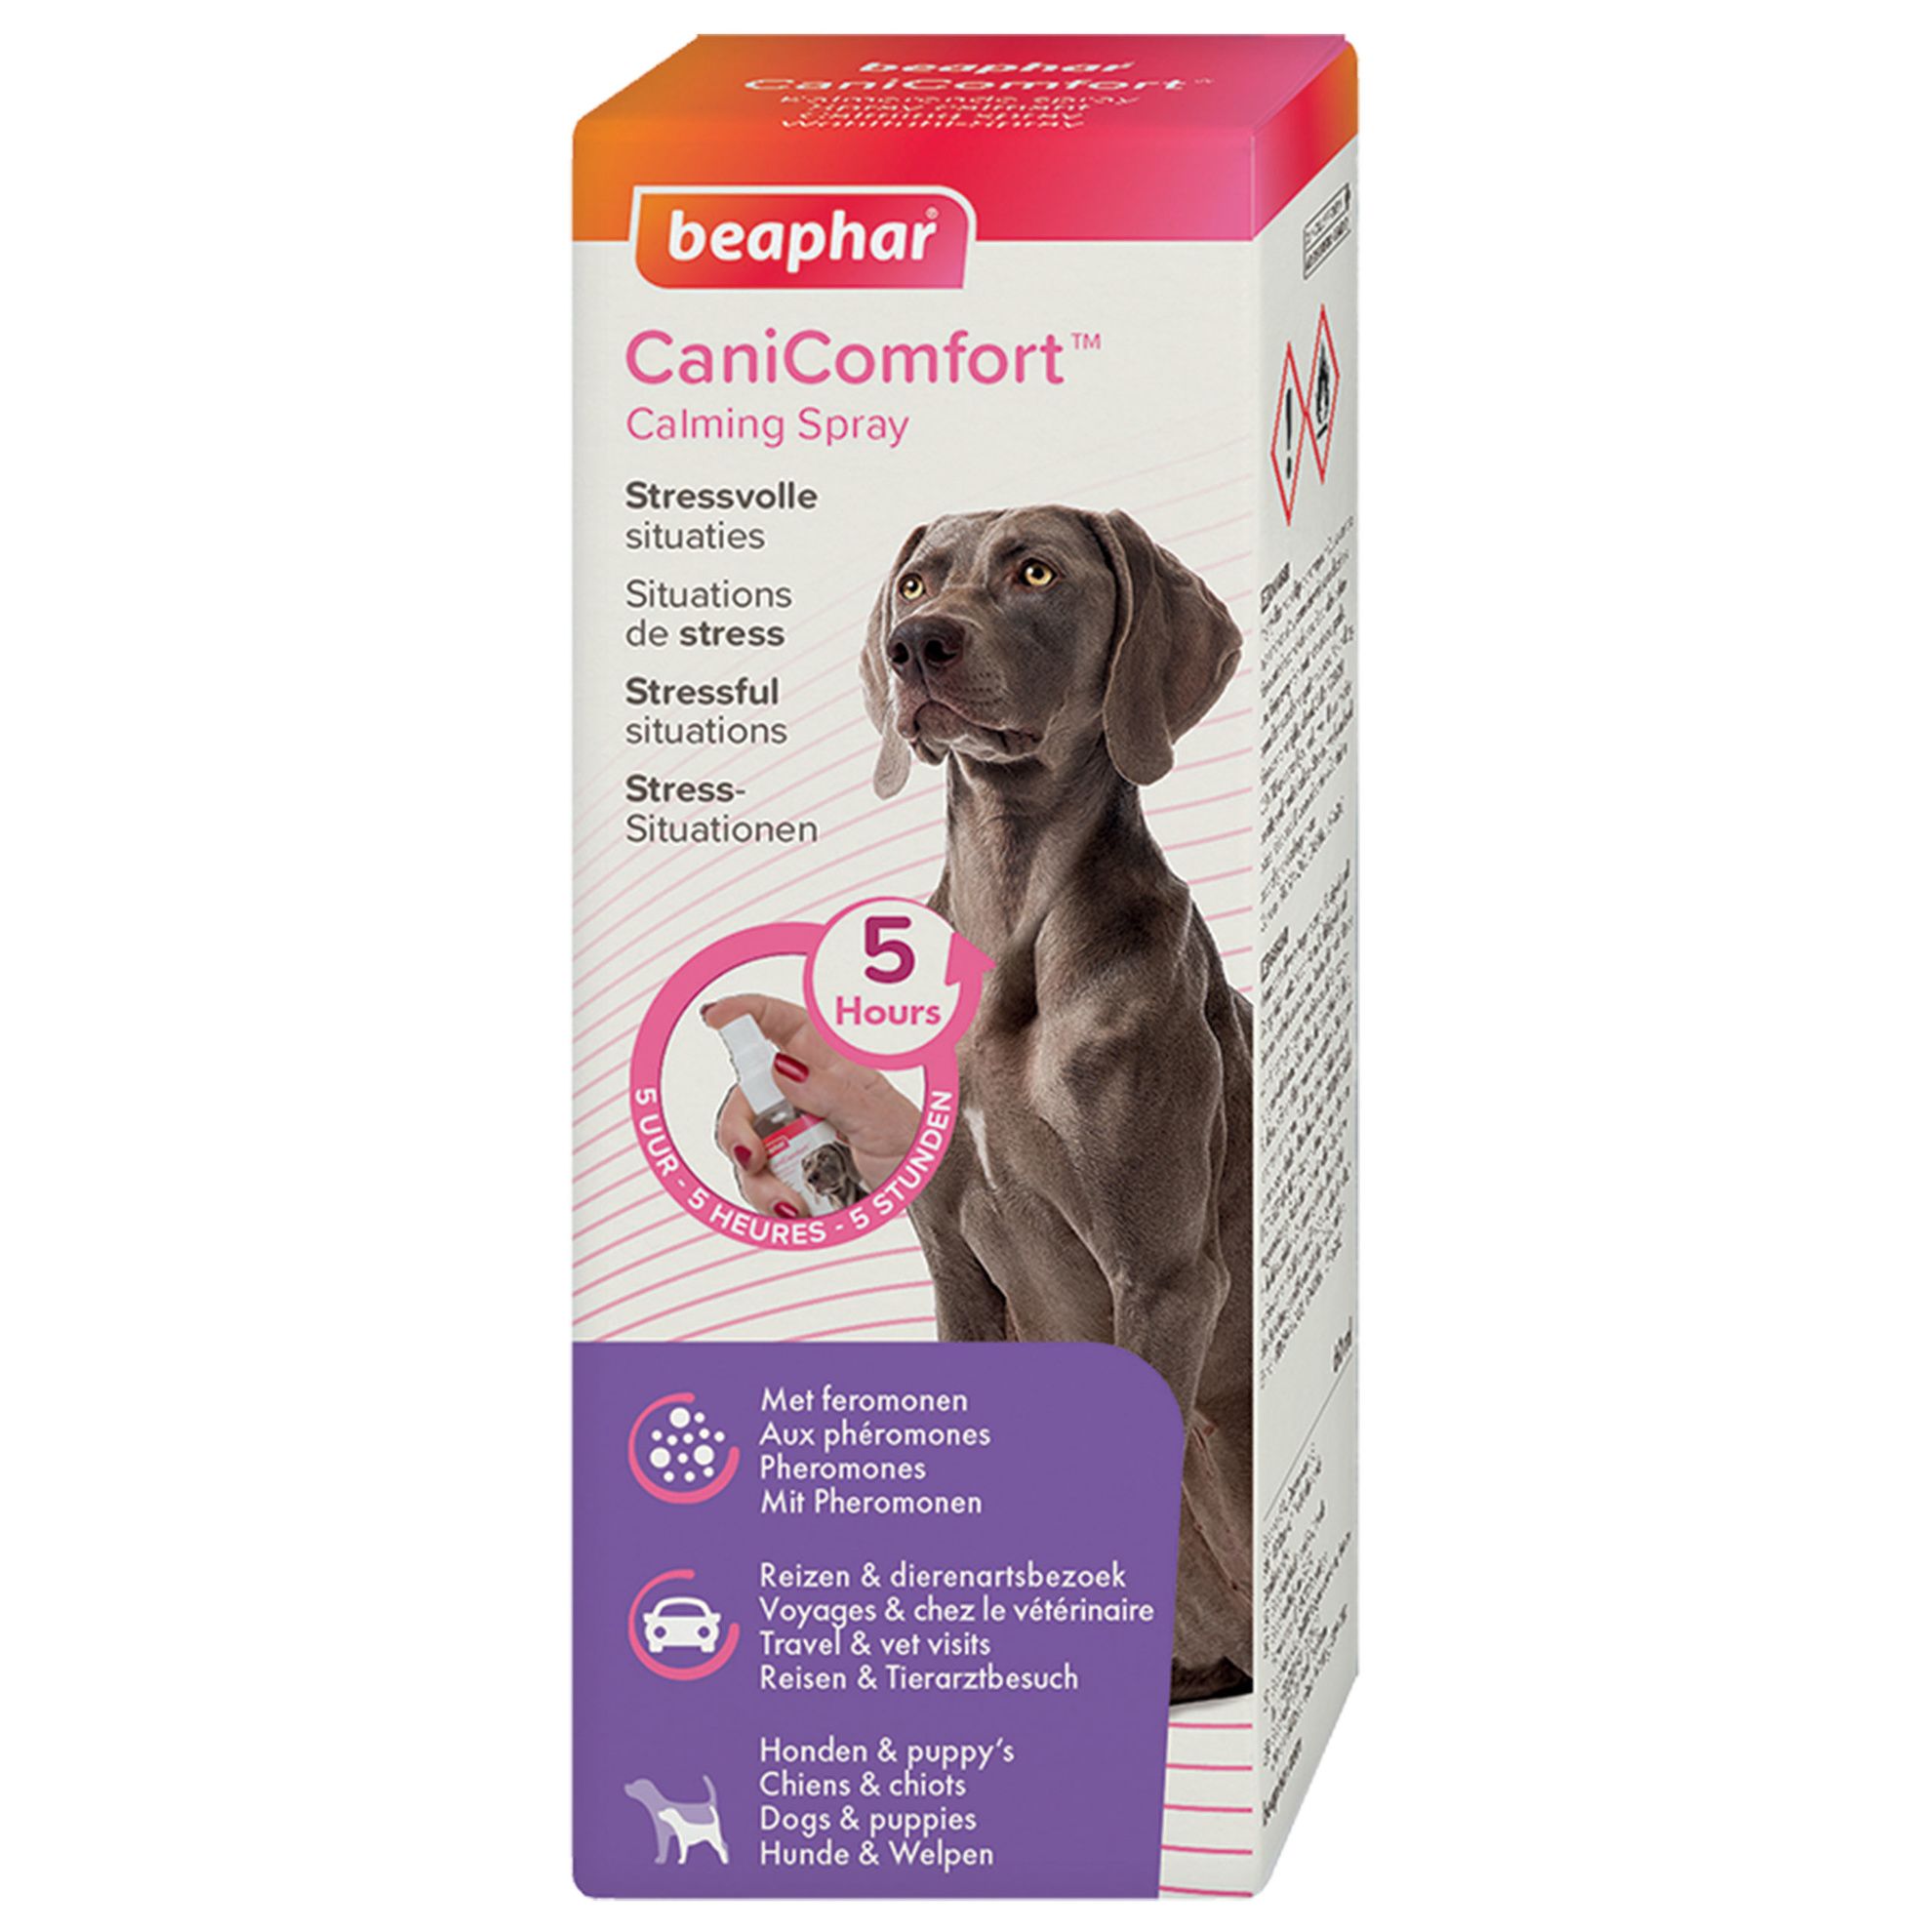 CatComfort, diffuseur et/ou recharge calmants aux phéromones pour